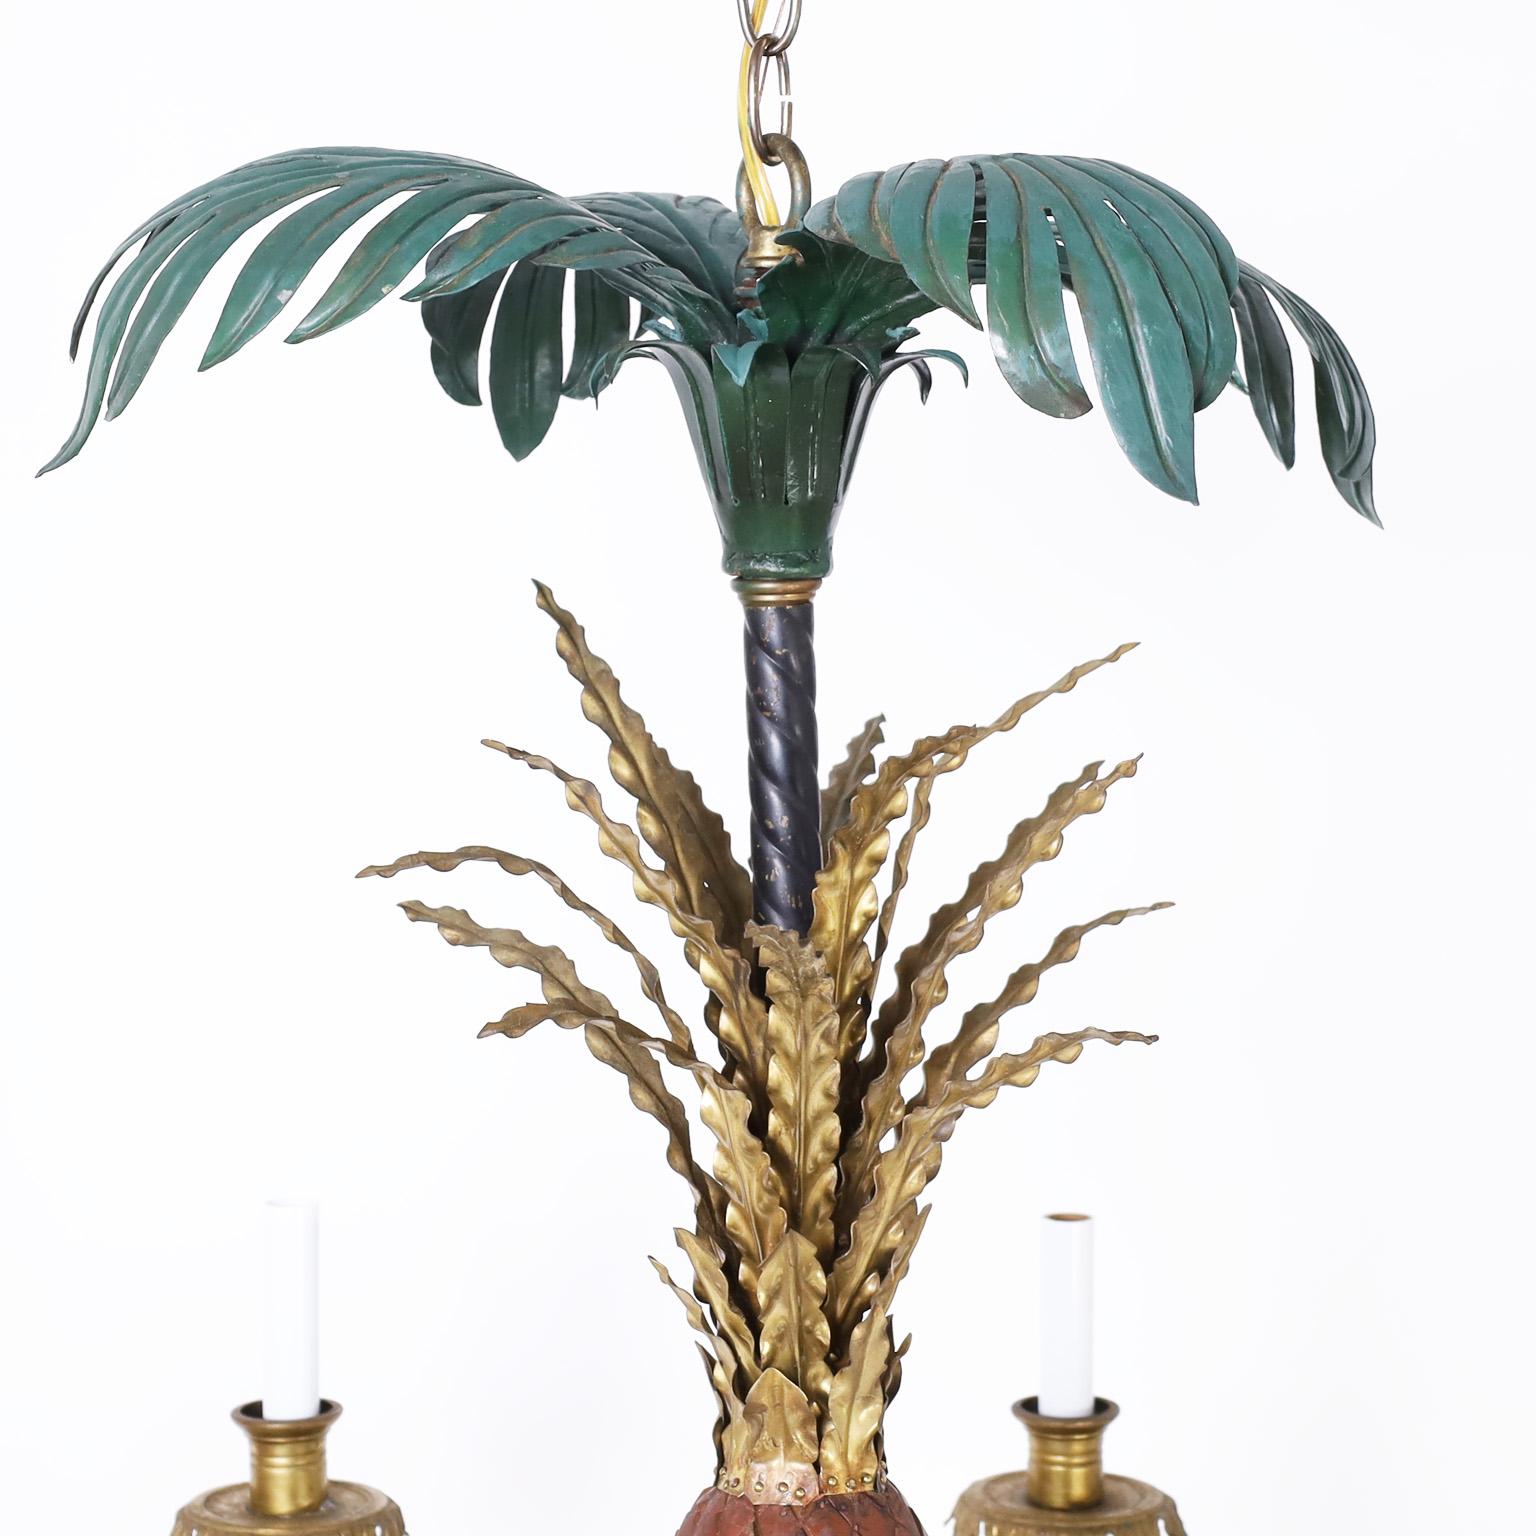 Lustre à huit lumières en laiton et métal peint dans une composition classique avec des feuilles de palmier au sommet sur un ananas tole avec des feuilles en laiton. Les huit bras en forme de feuilles de palmier supportent des douilles en laiton en